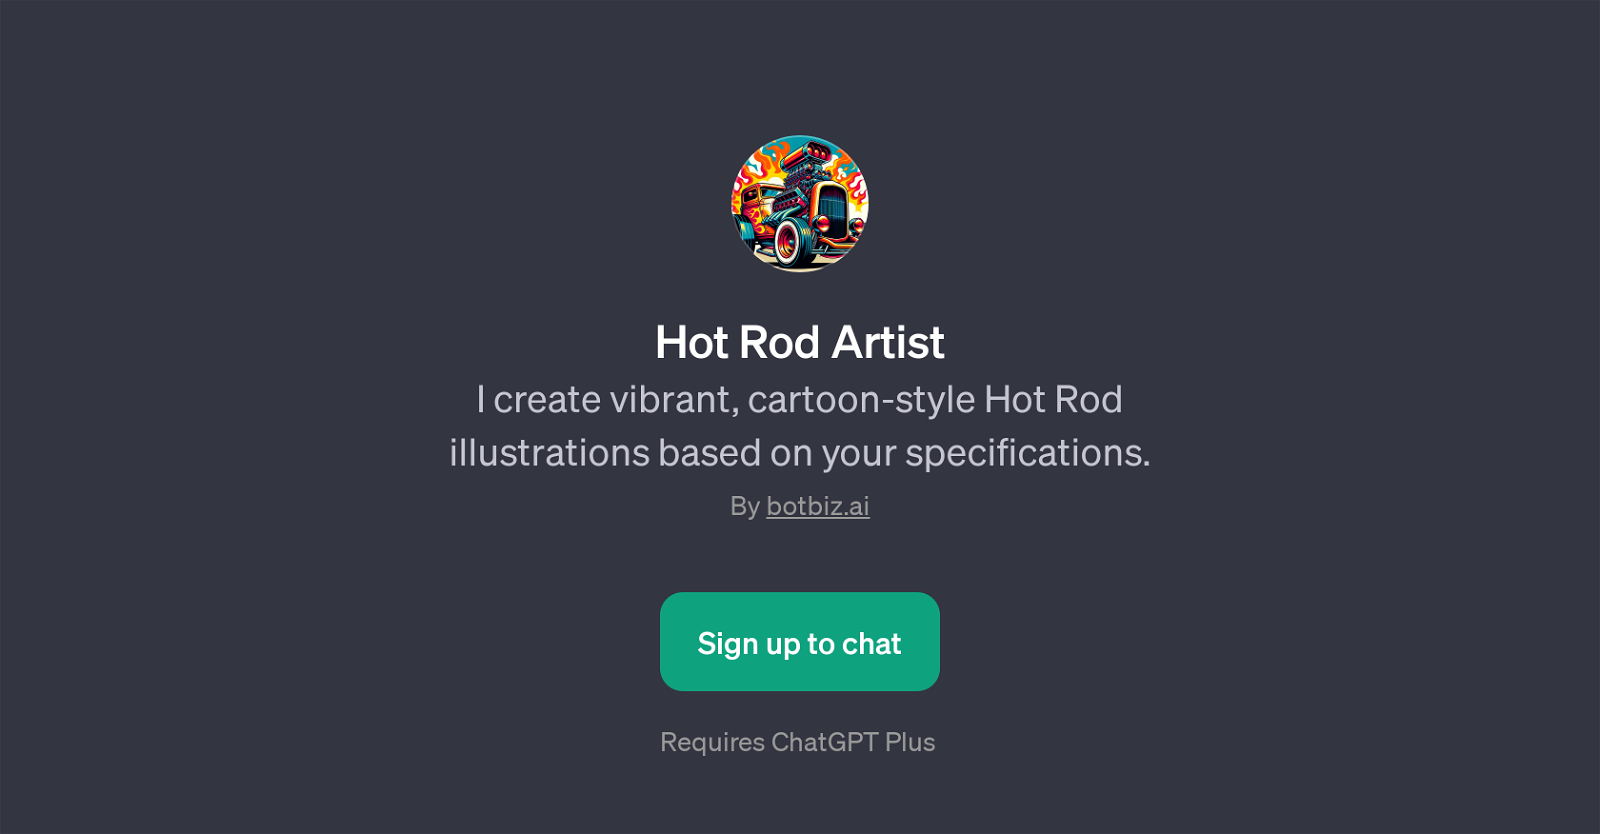 Hot Rod Artist website